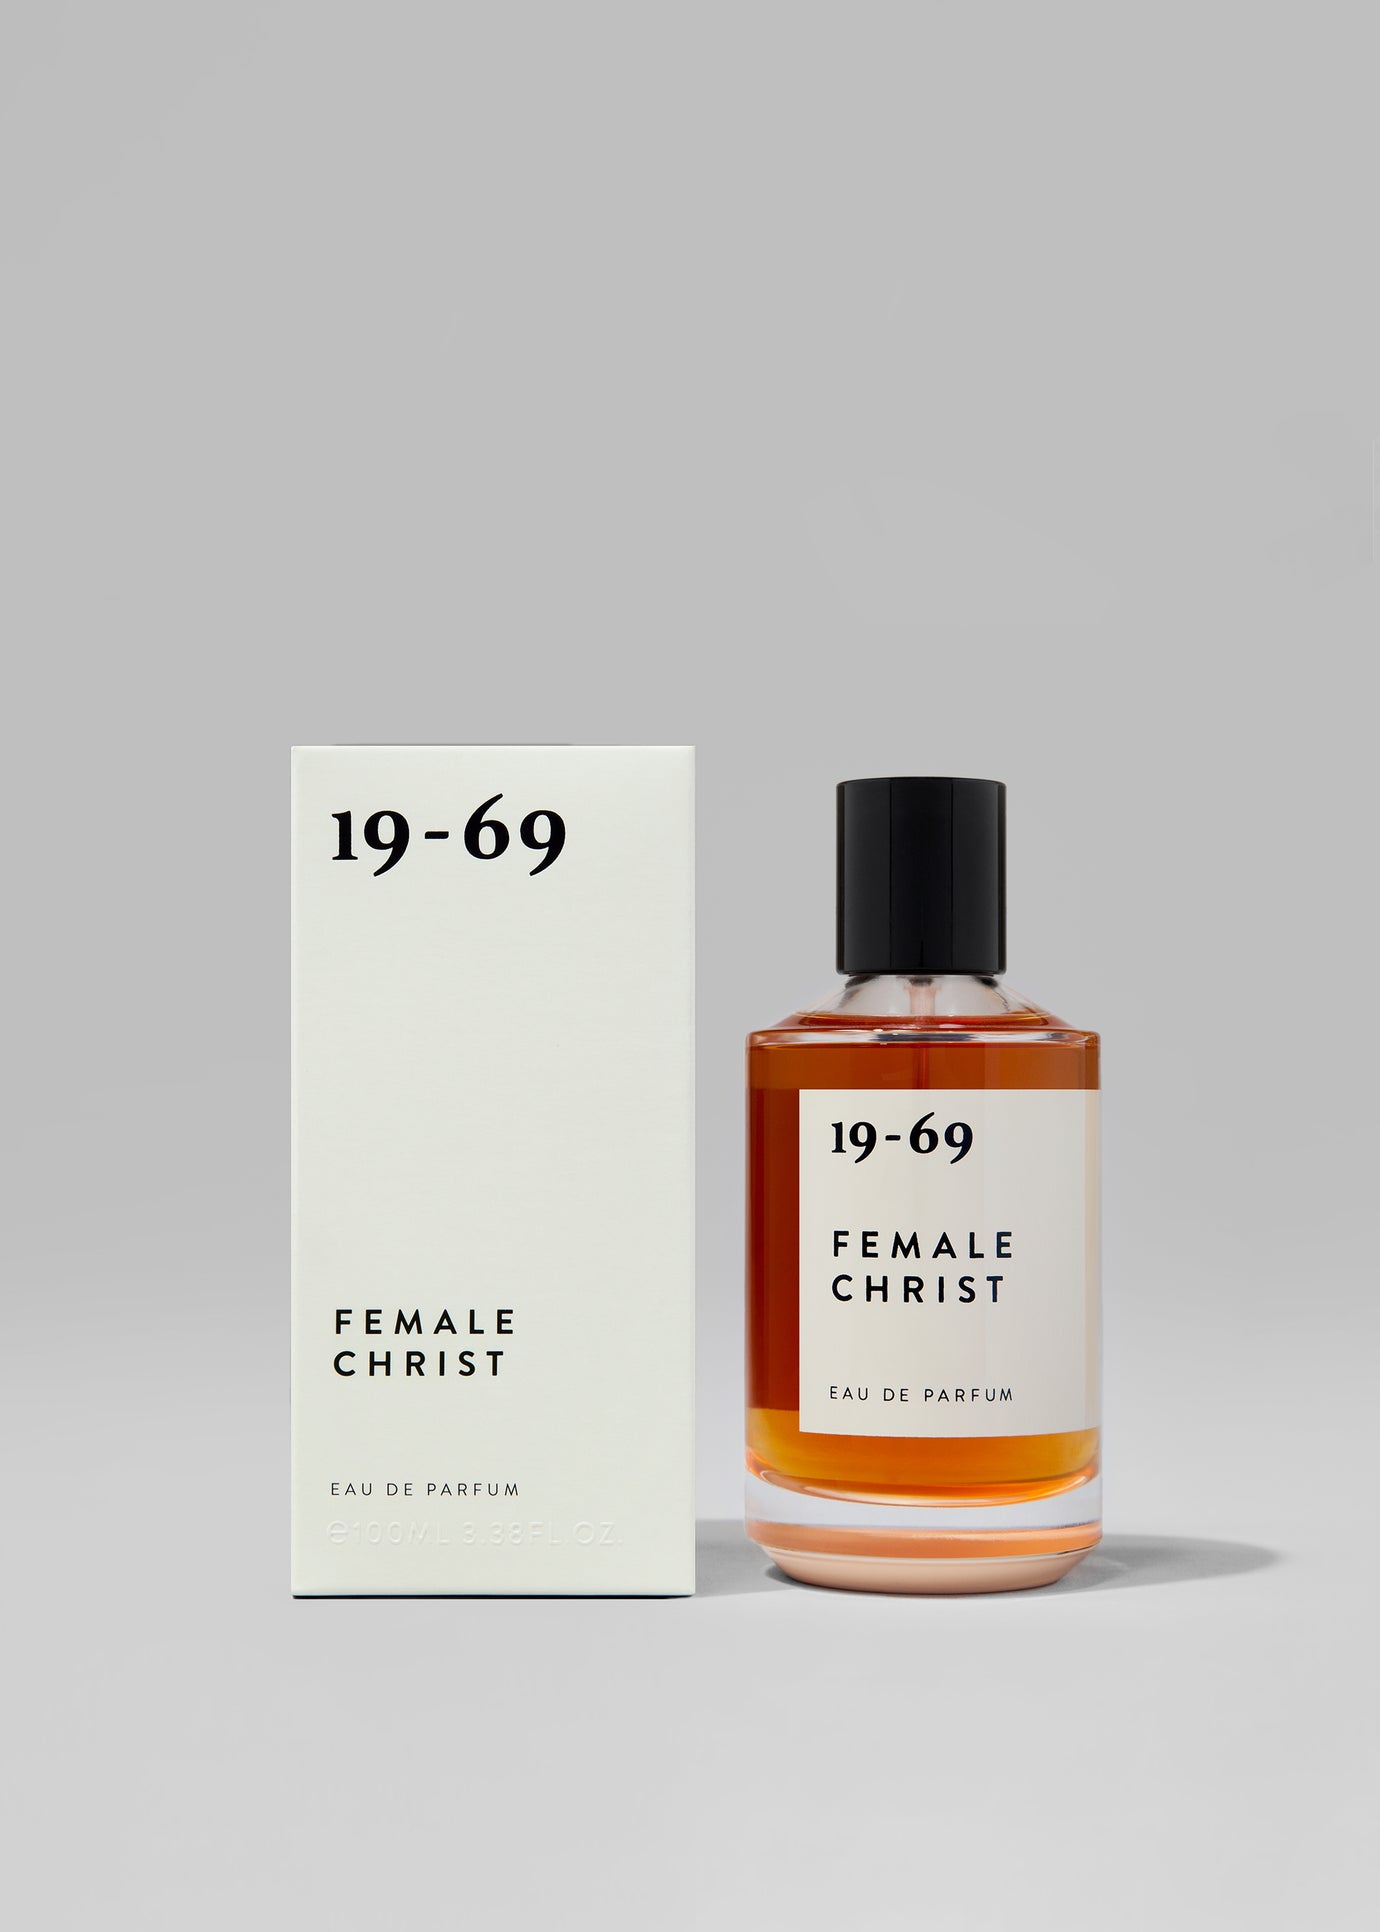 19-69 Female Christ Eau de Parfum - 1